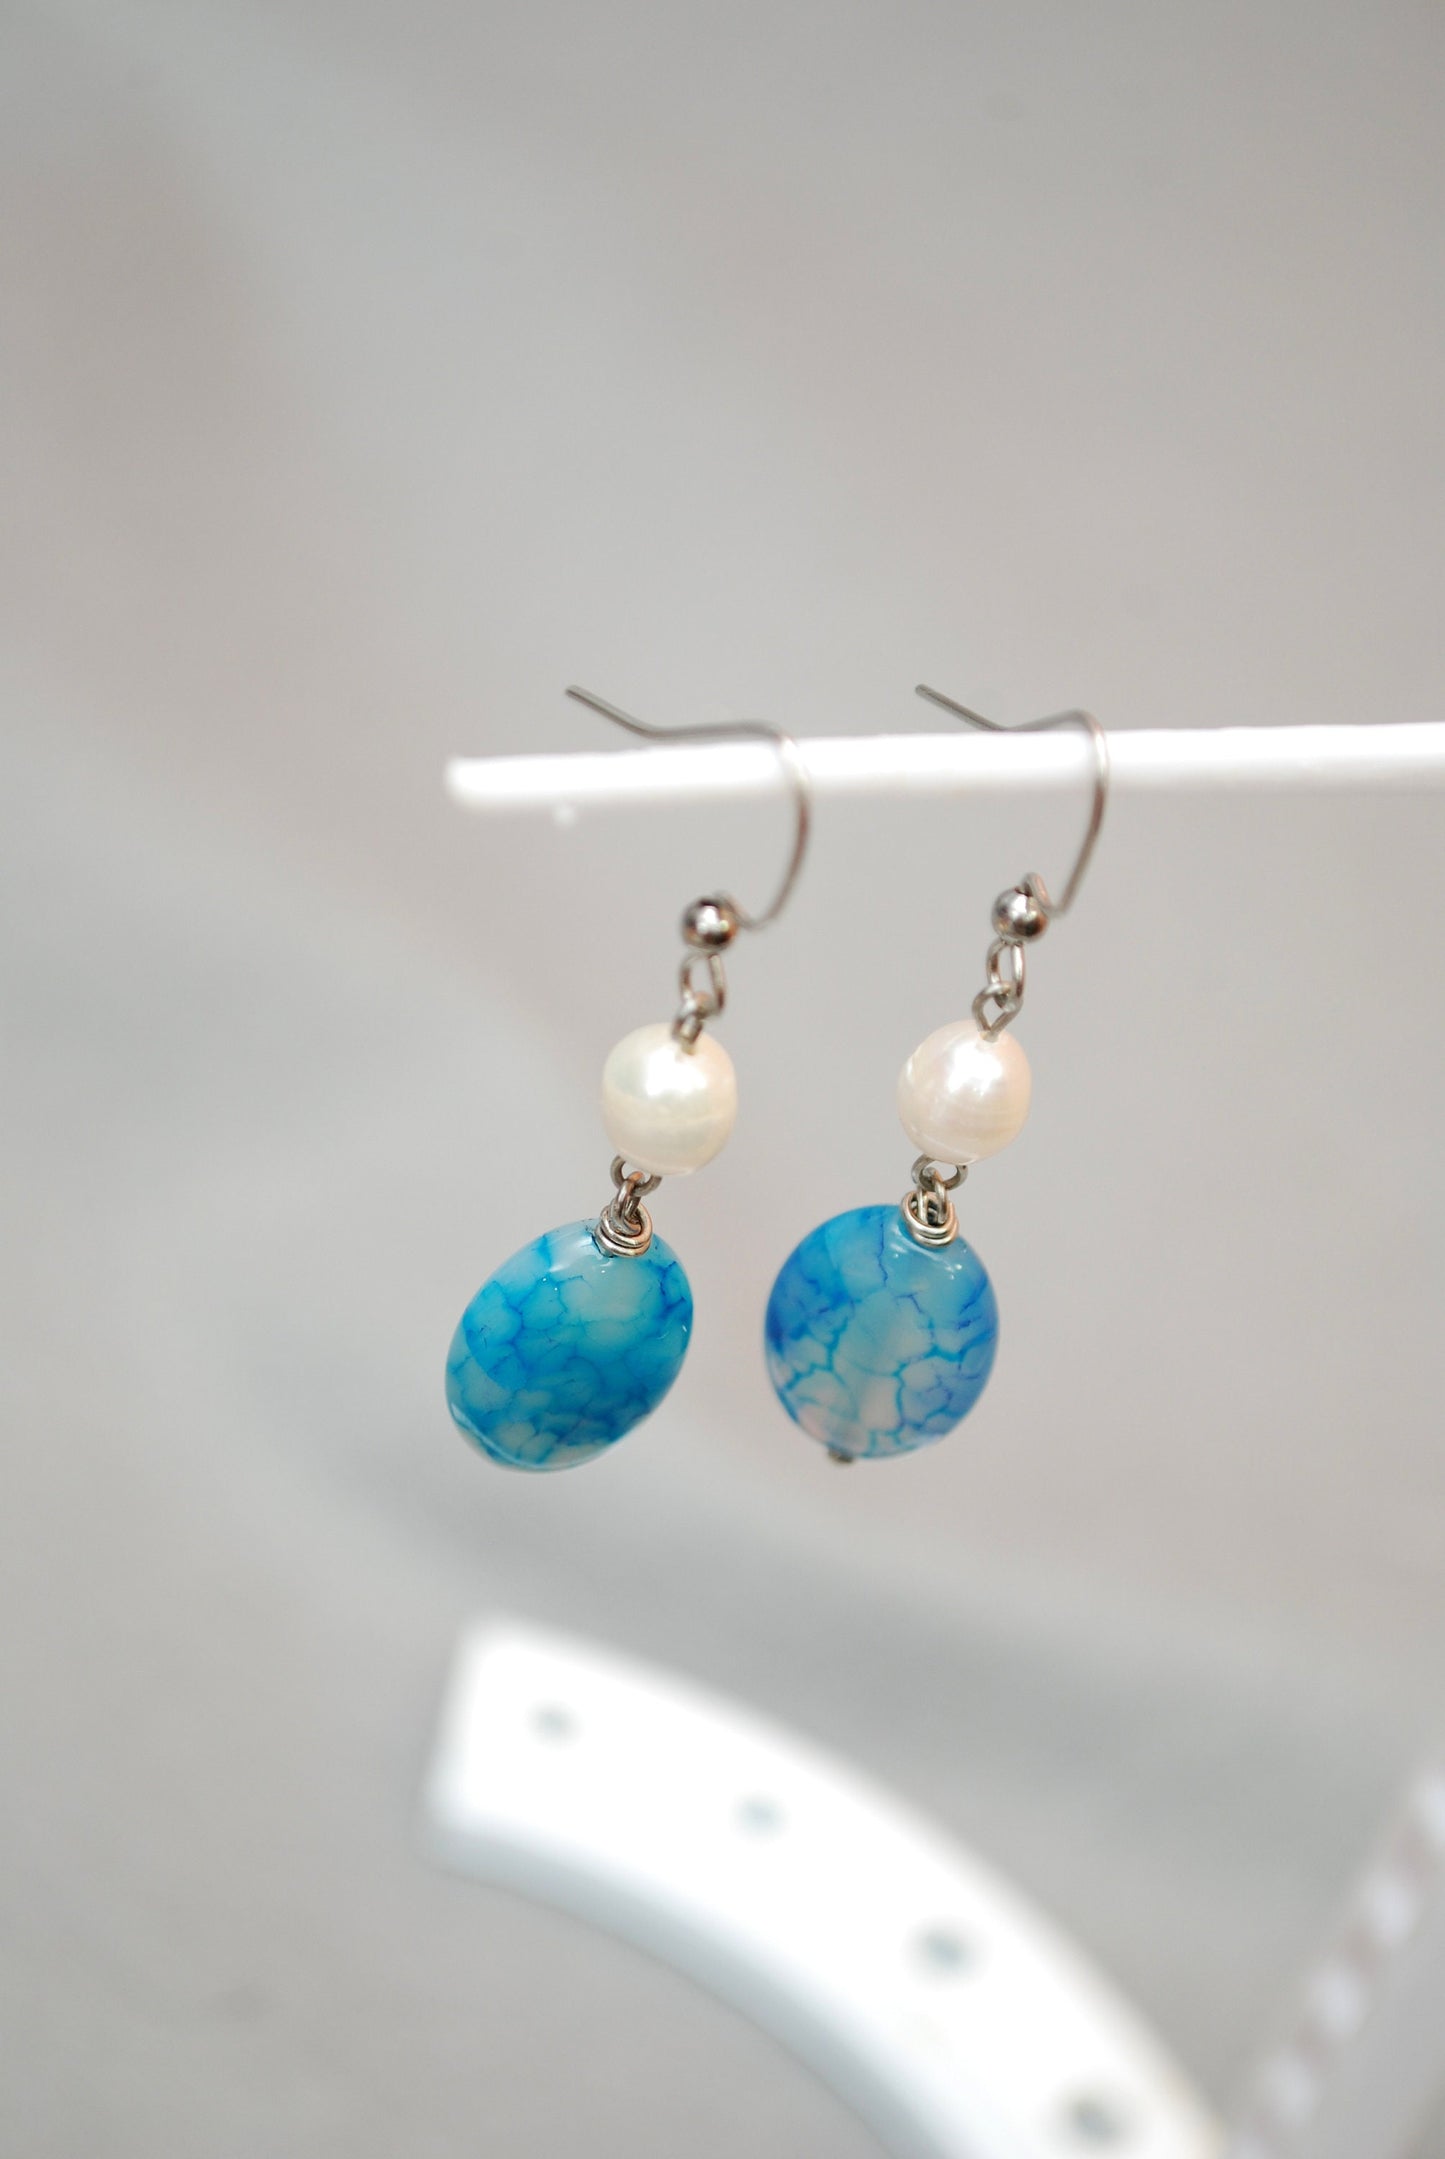 Boho-chic stainless steel earrings. Dragon agate & freshwater pearl dangle earrings. Estibela design. 5.2cm - 2". Must-have for boho brides